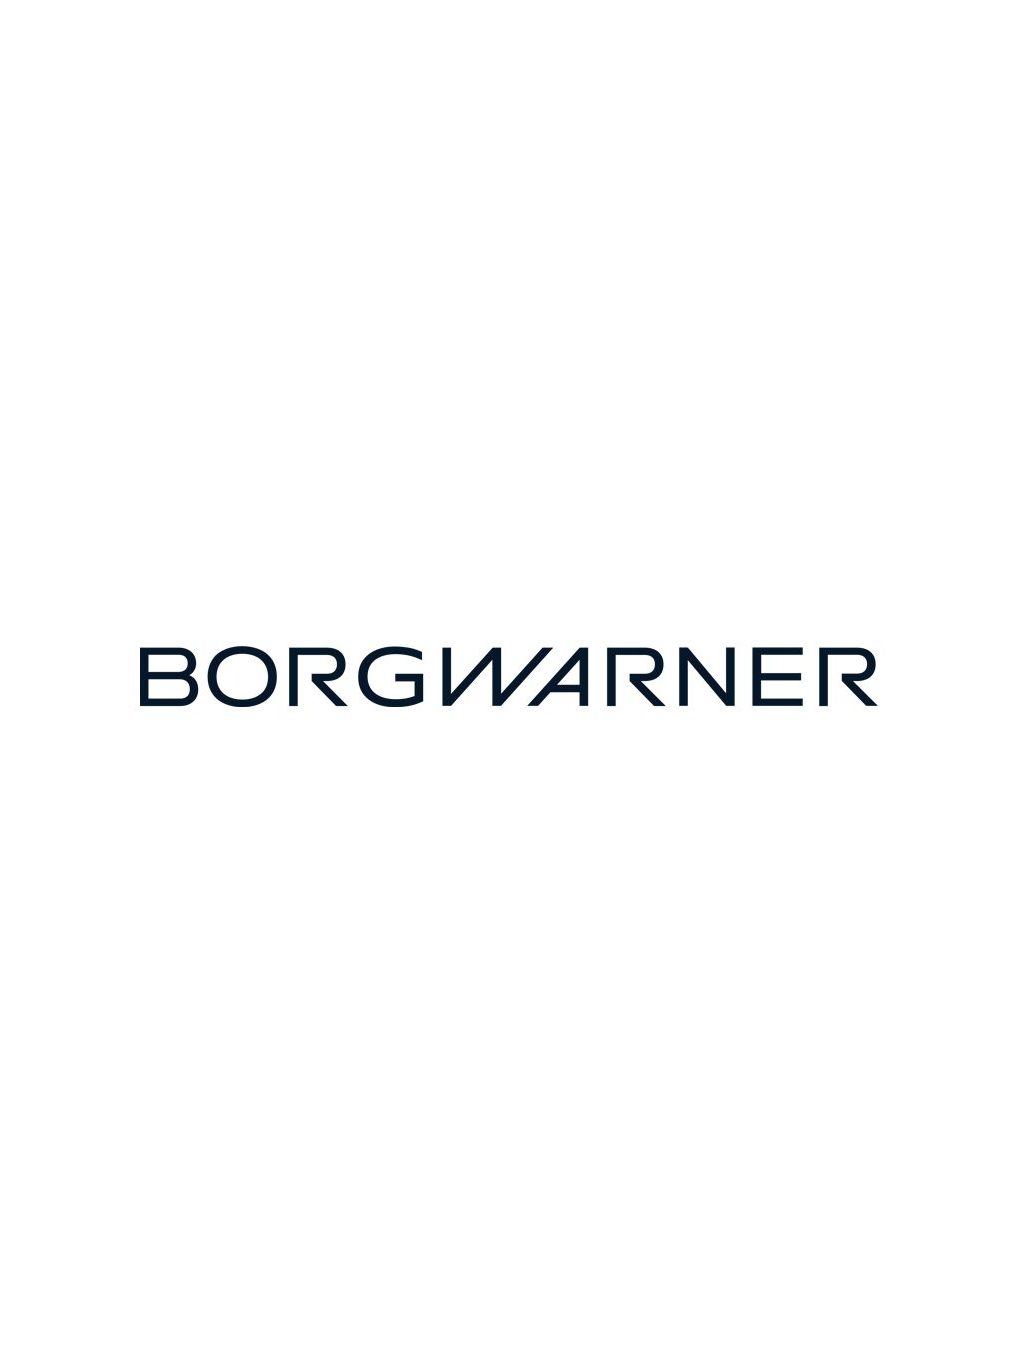 Borgwarner Logo